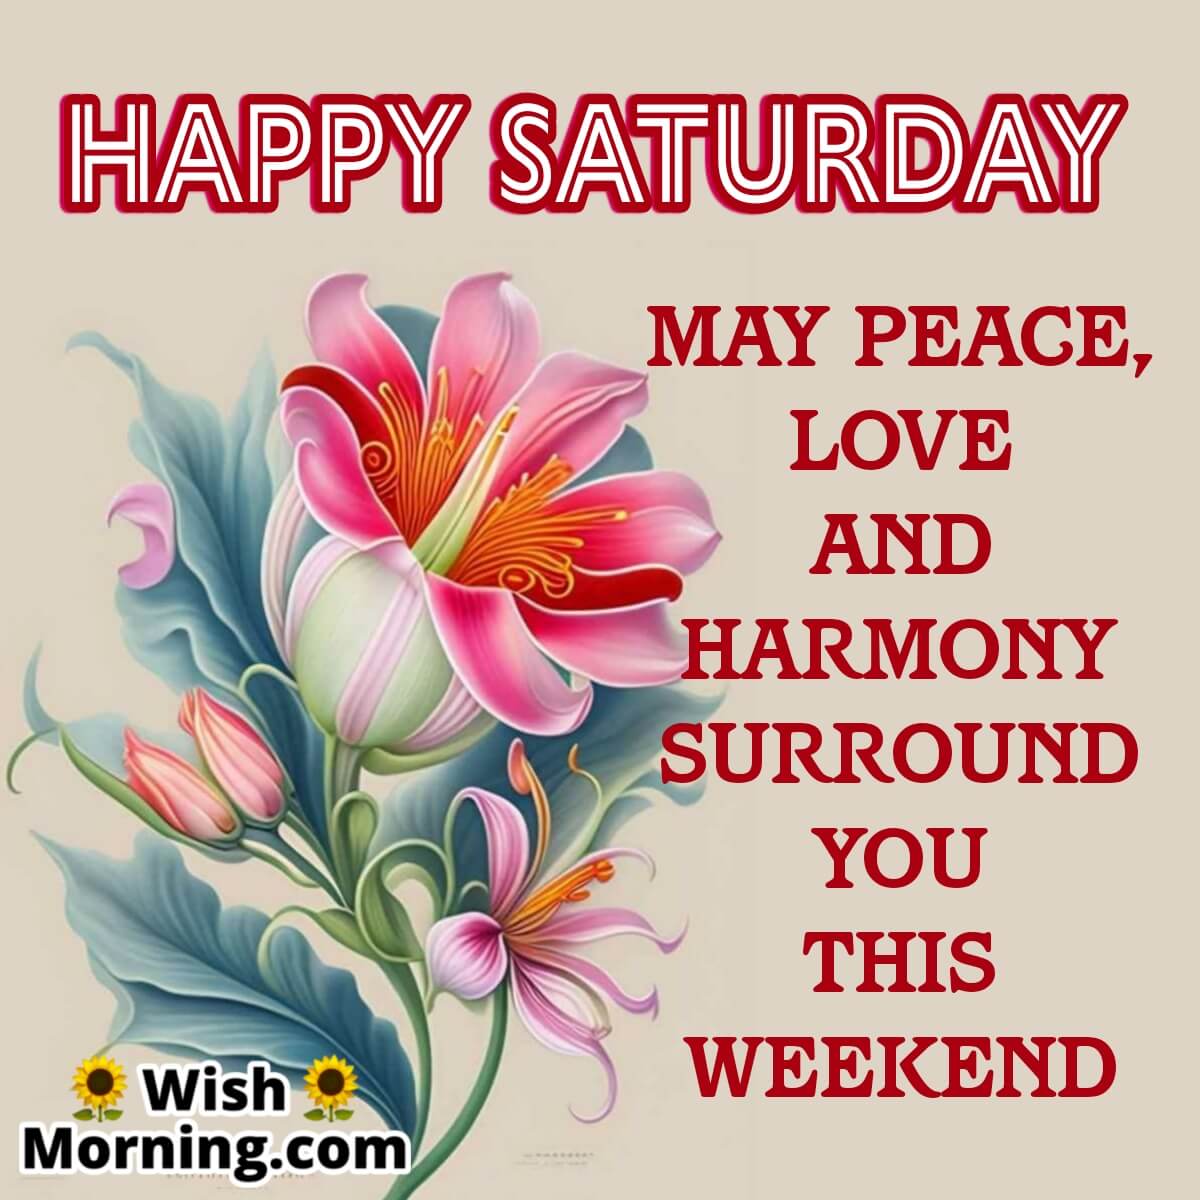 Happy Saturday Peaceful Weekend